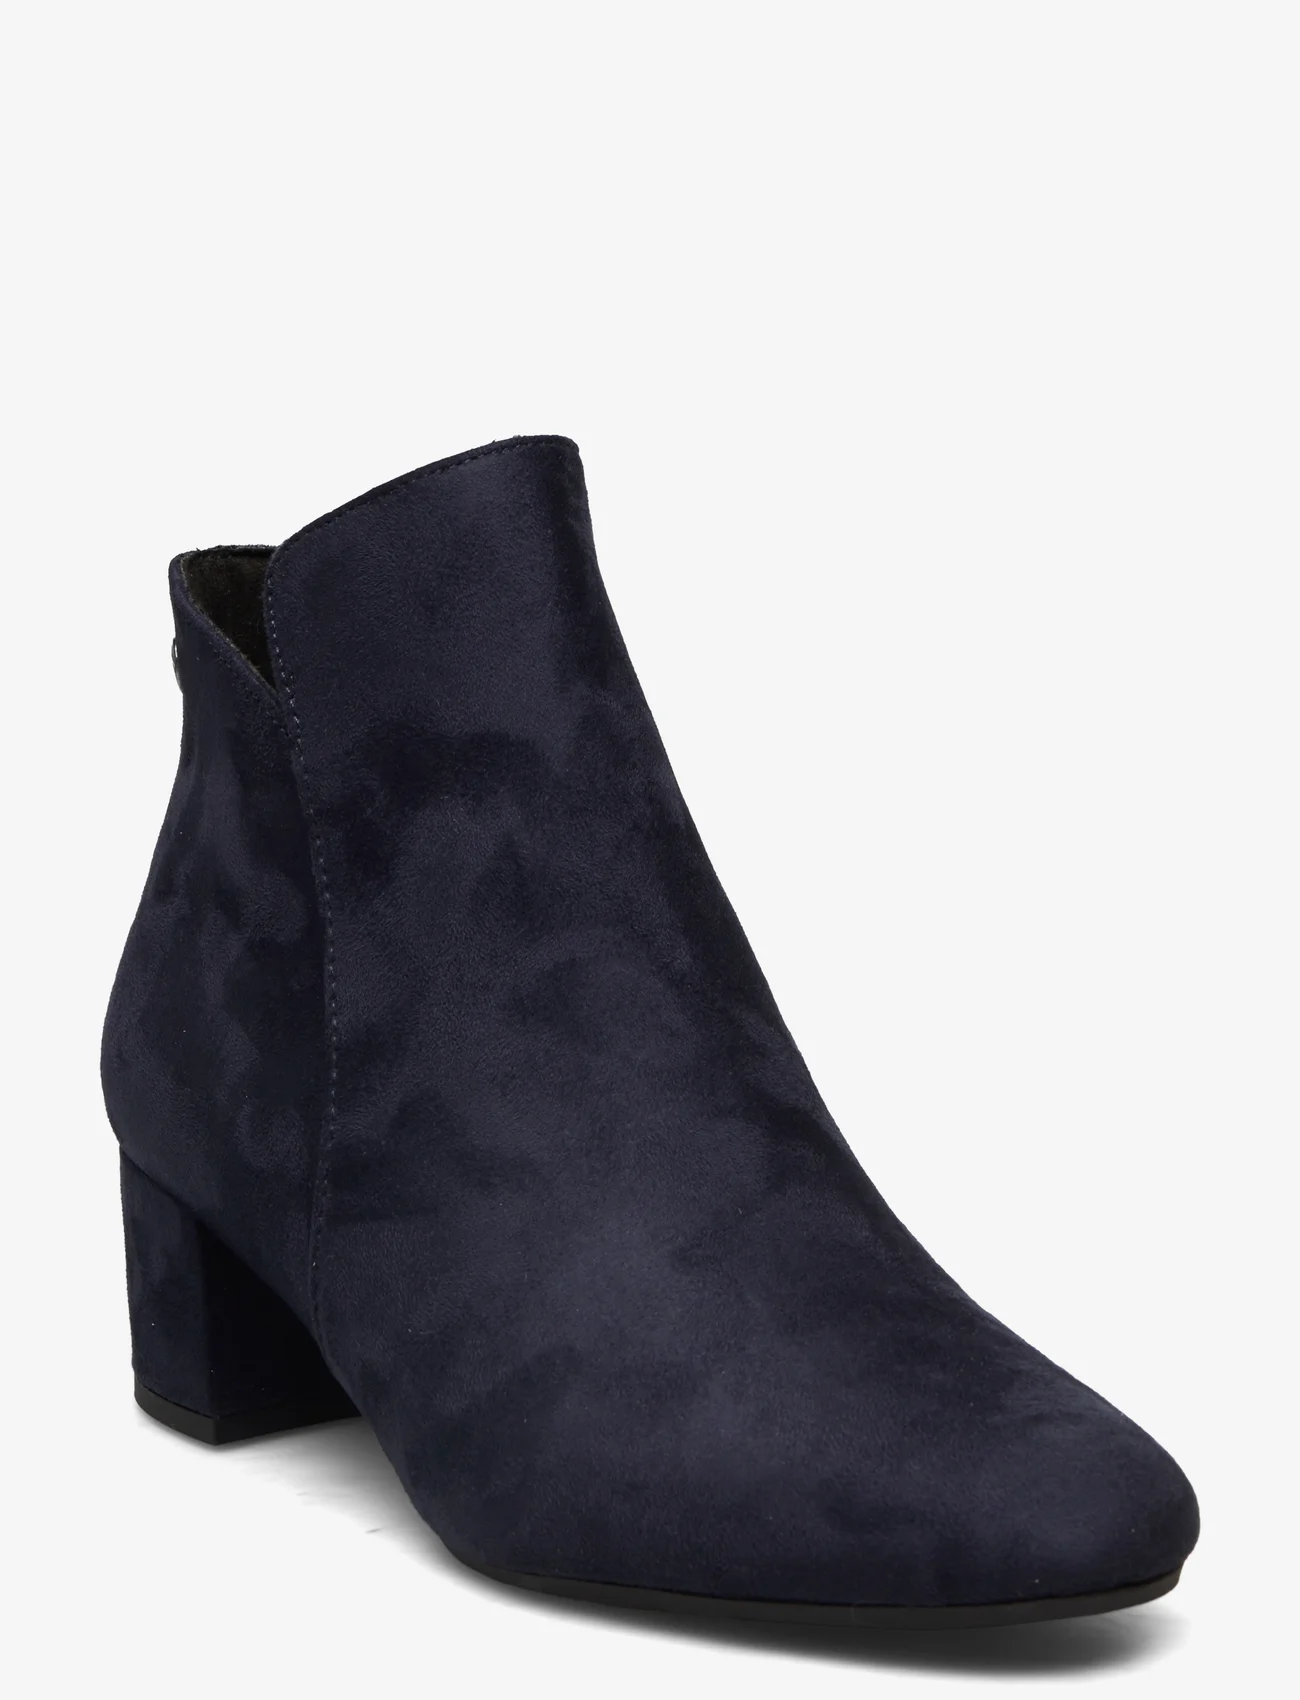 Tamaris - Women Boots - high heel - navy - 0